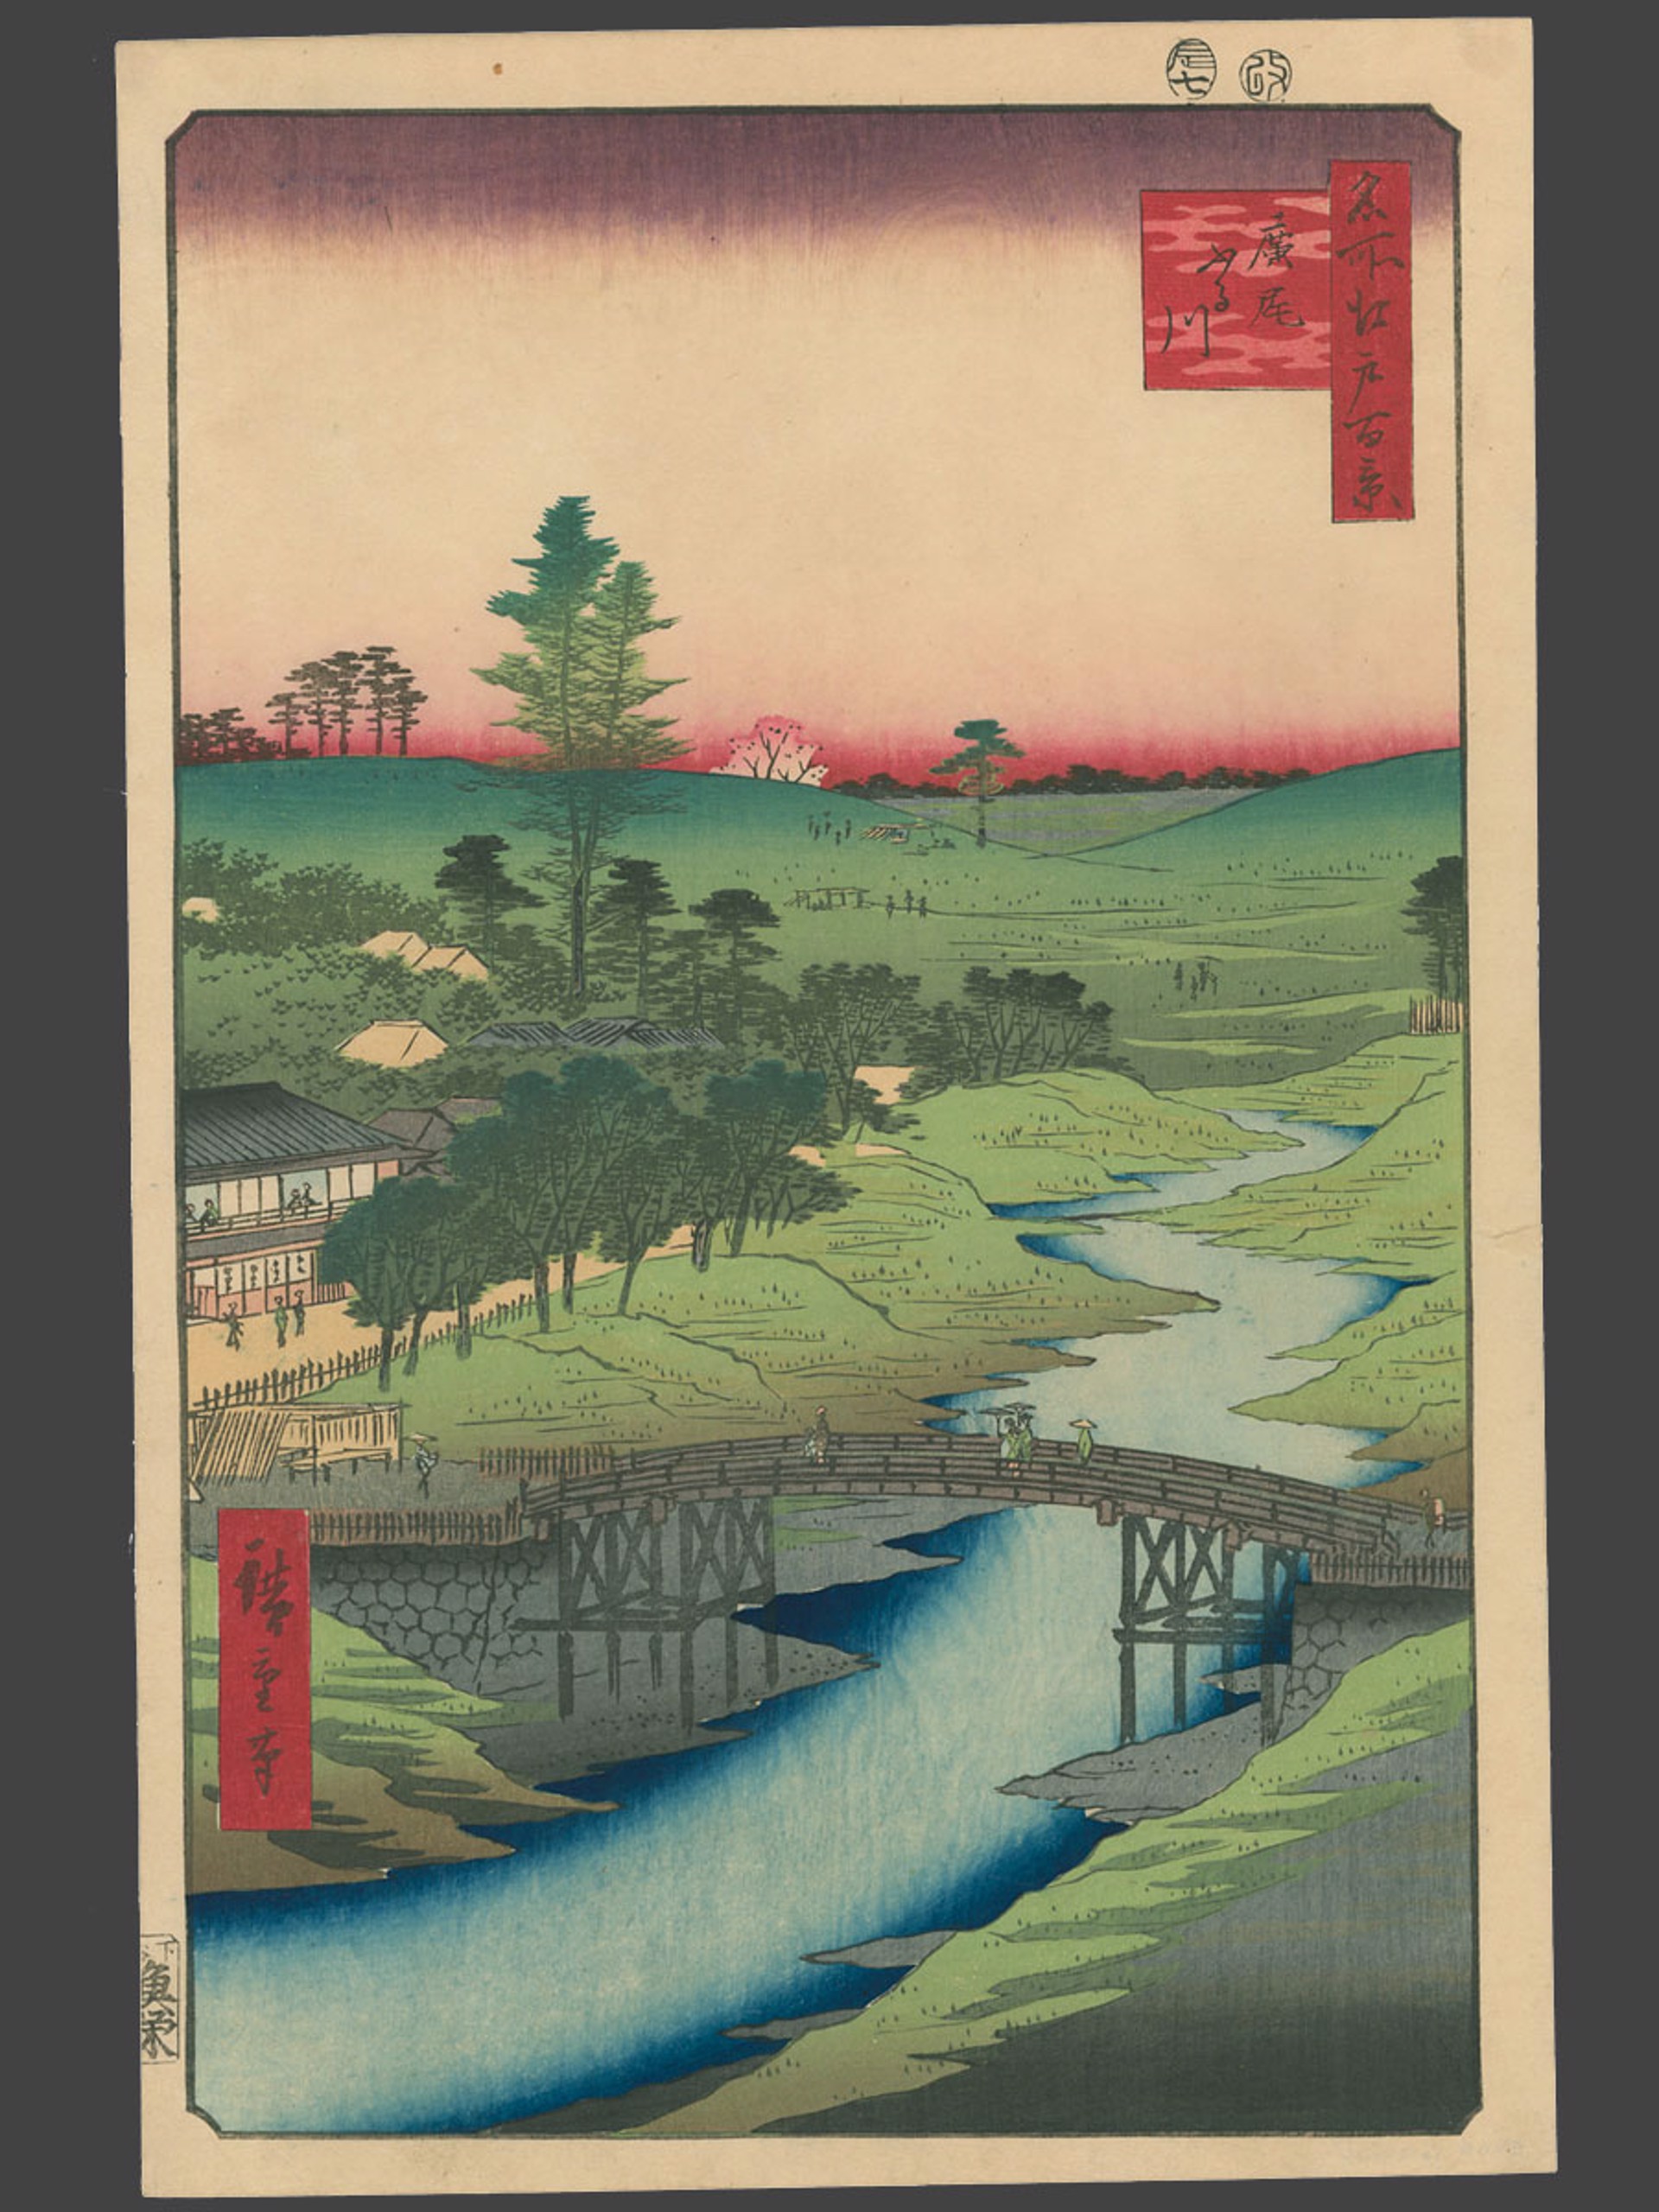 #22 Furukawa River at Hiroo 100 Views of Edo by Hiroshige